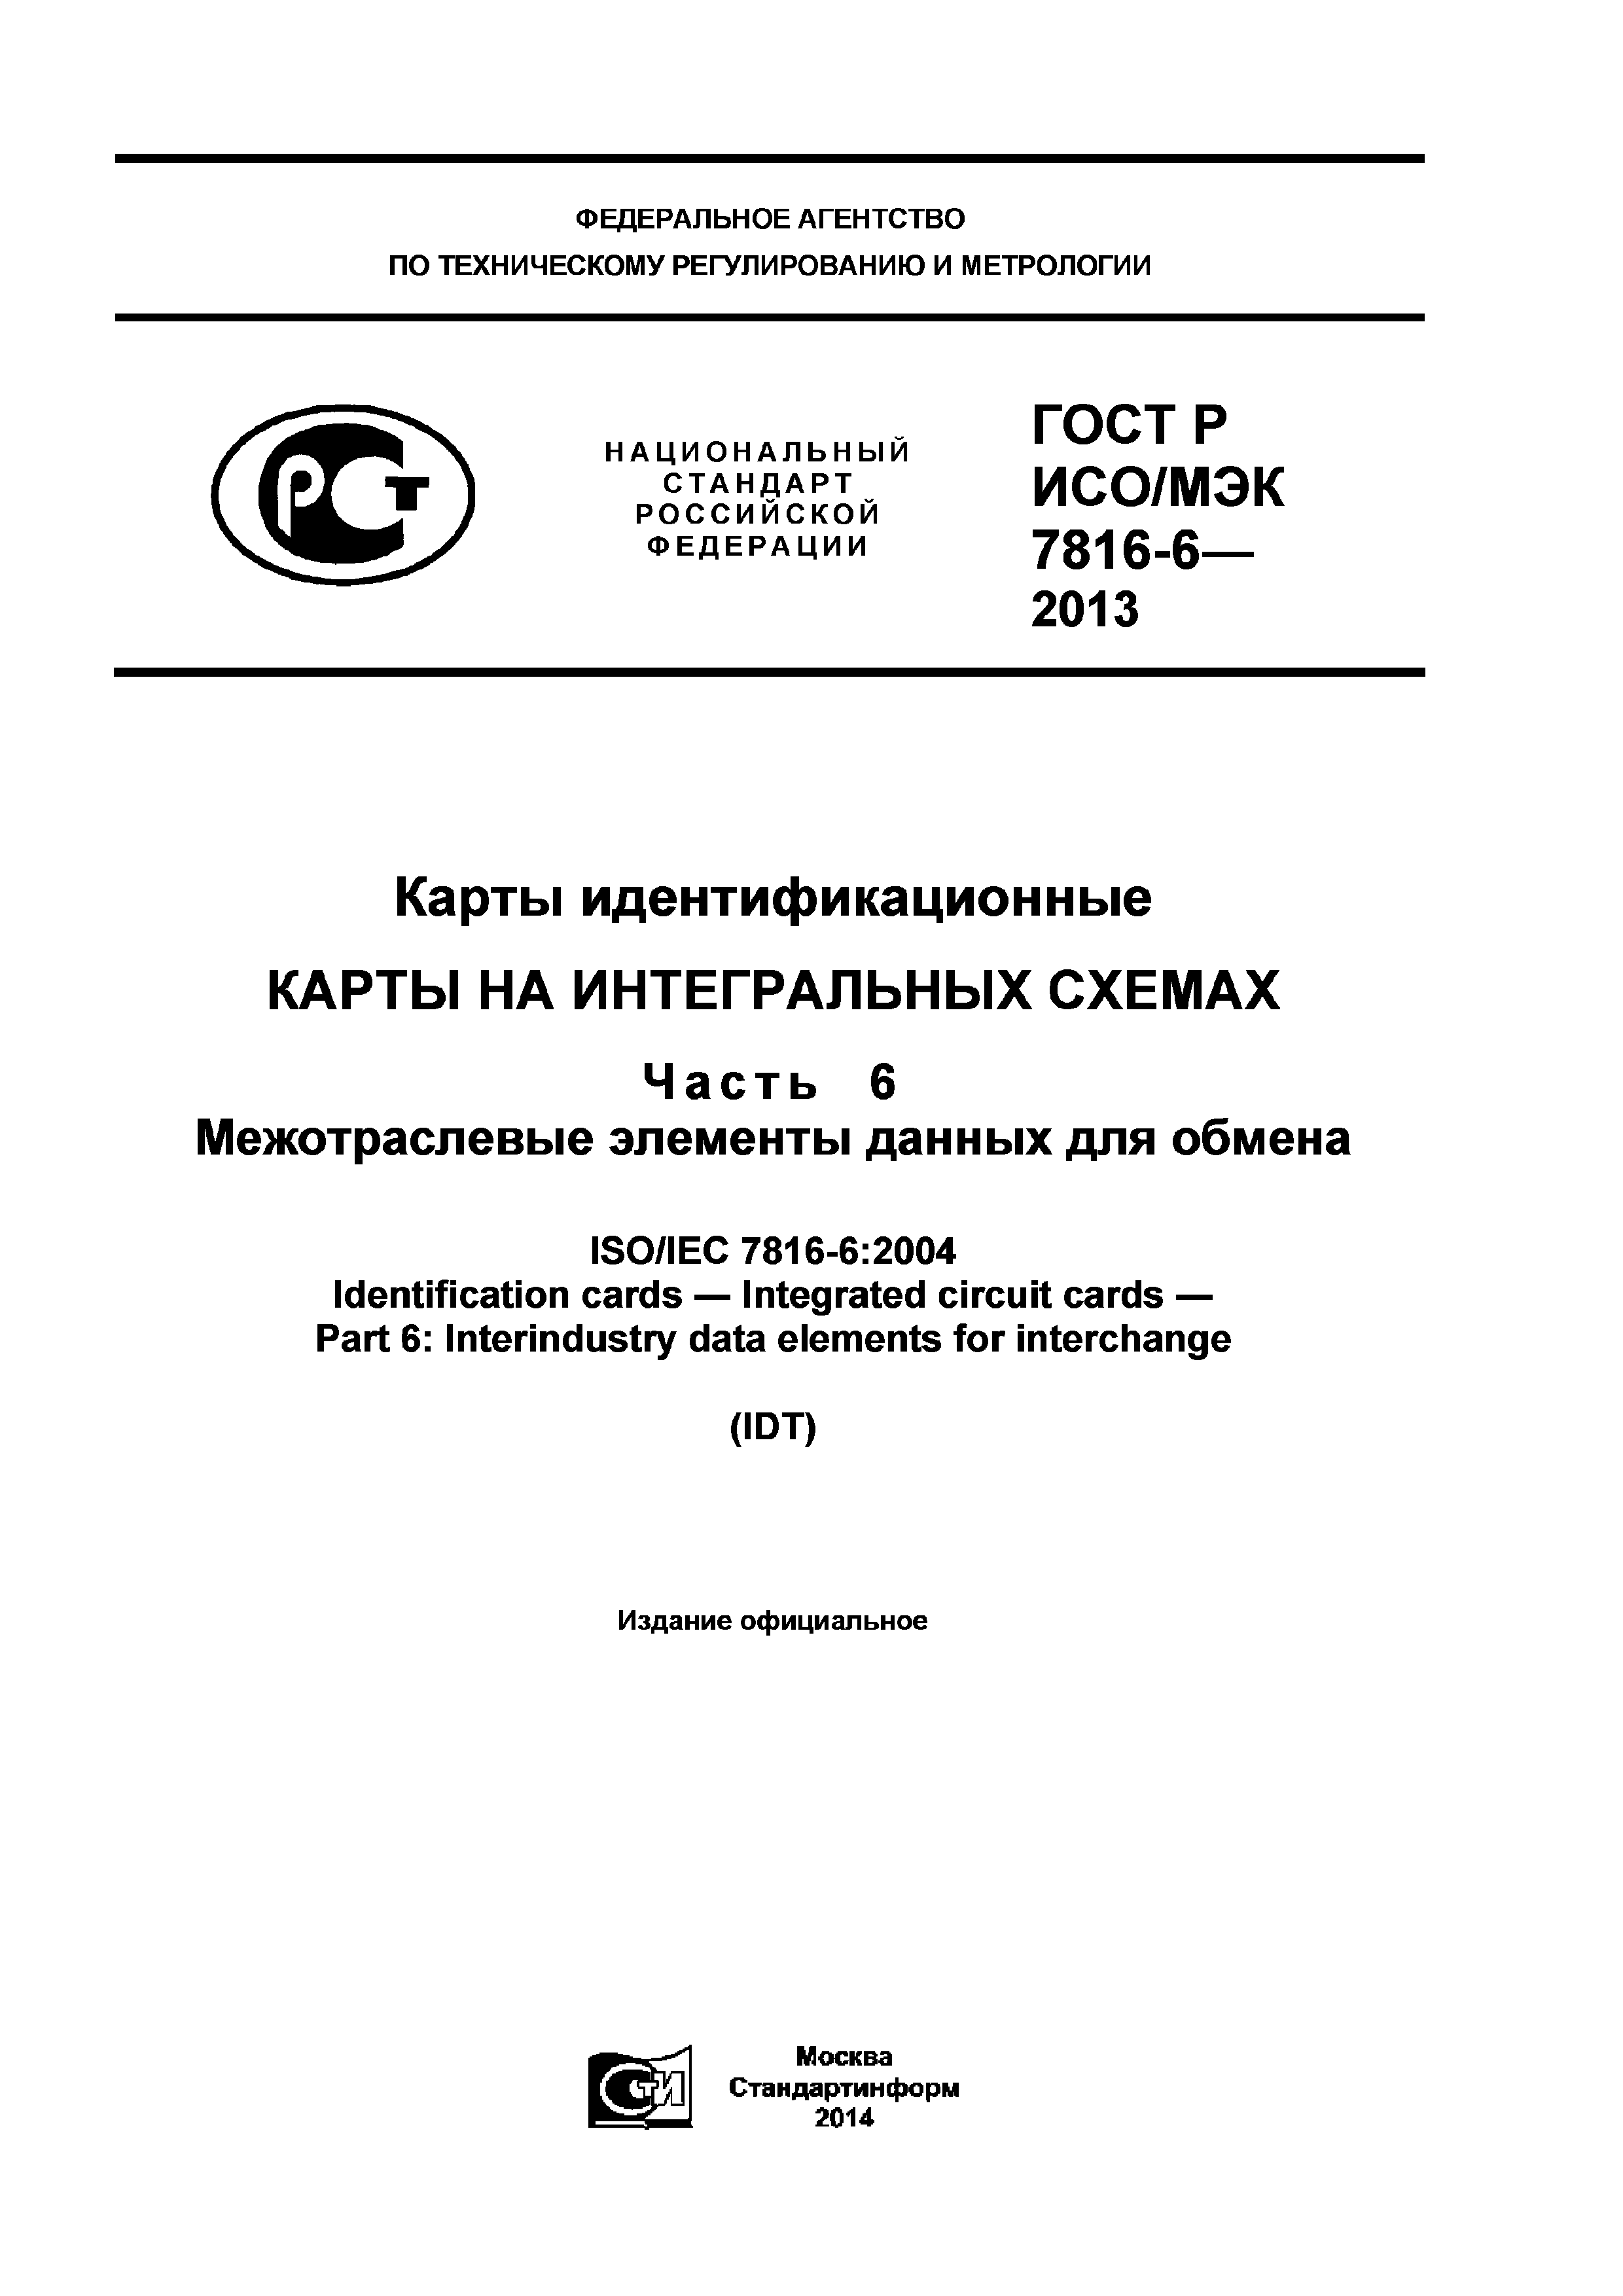 ГОСТ Р ИСО/МЭК 7816-6-2013